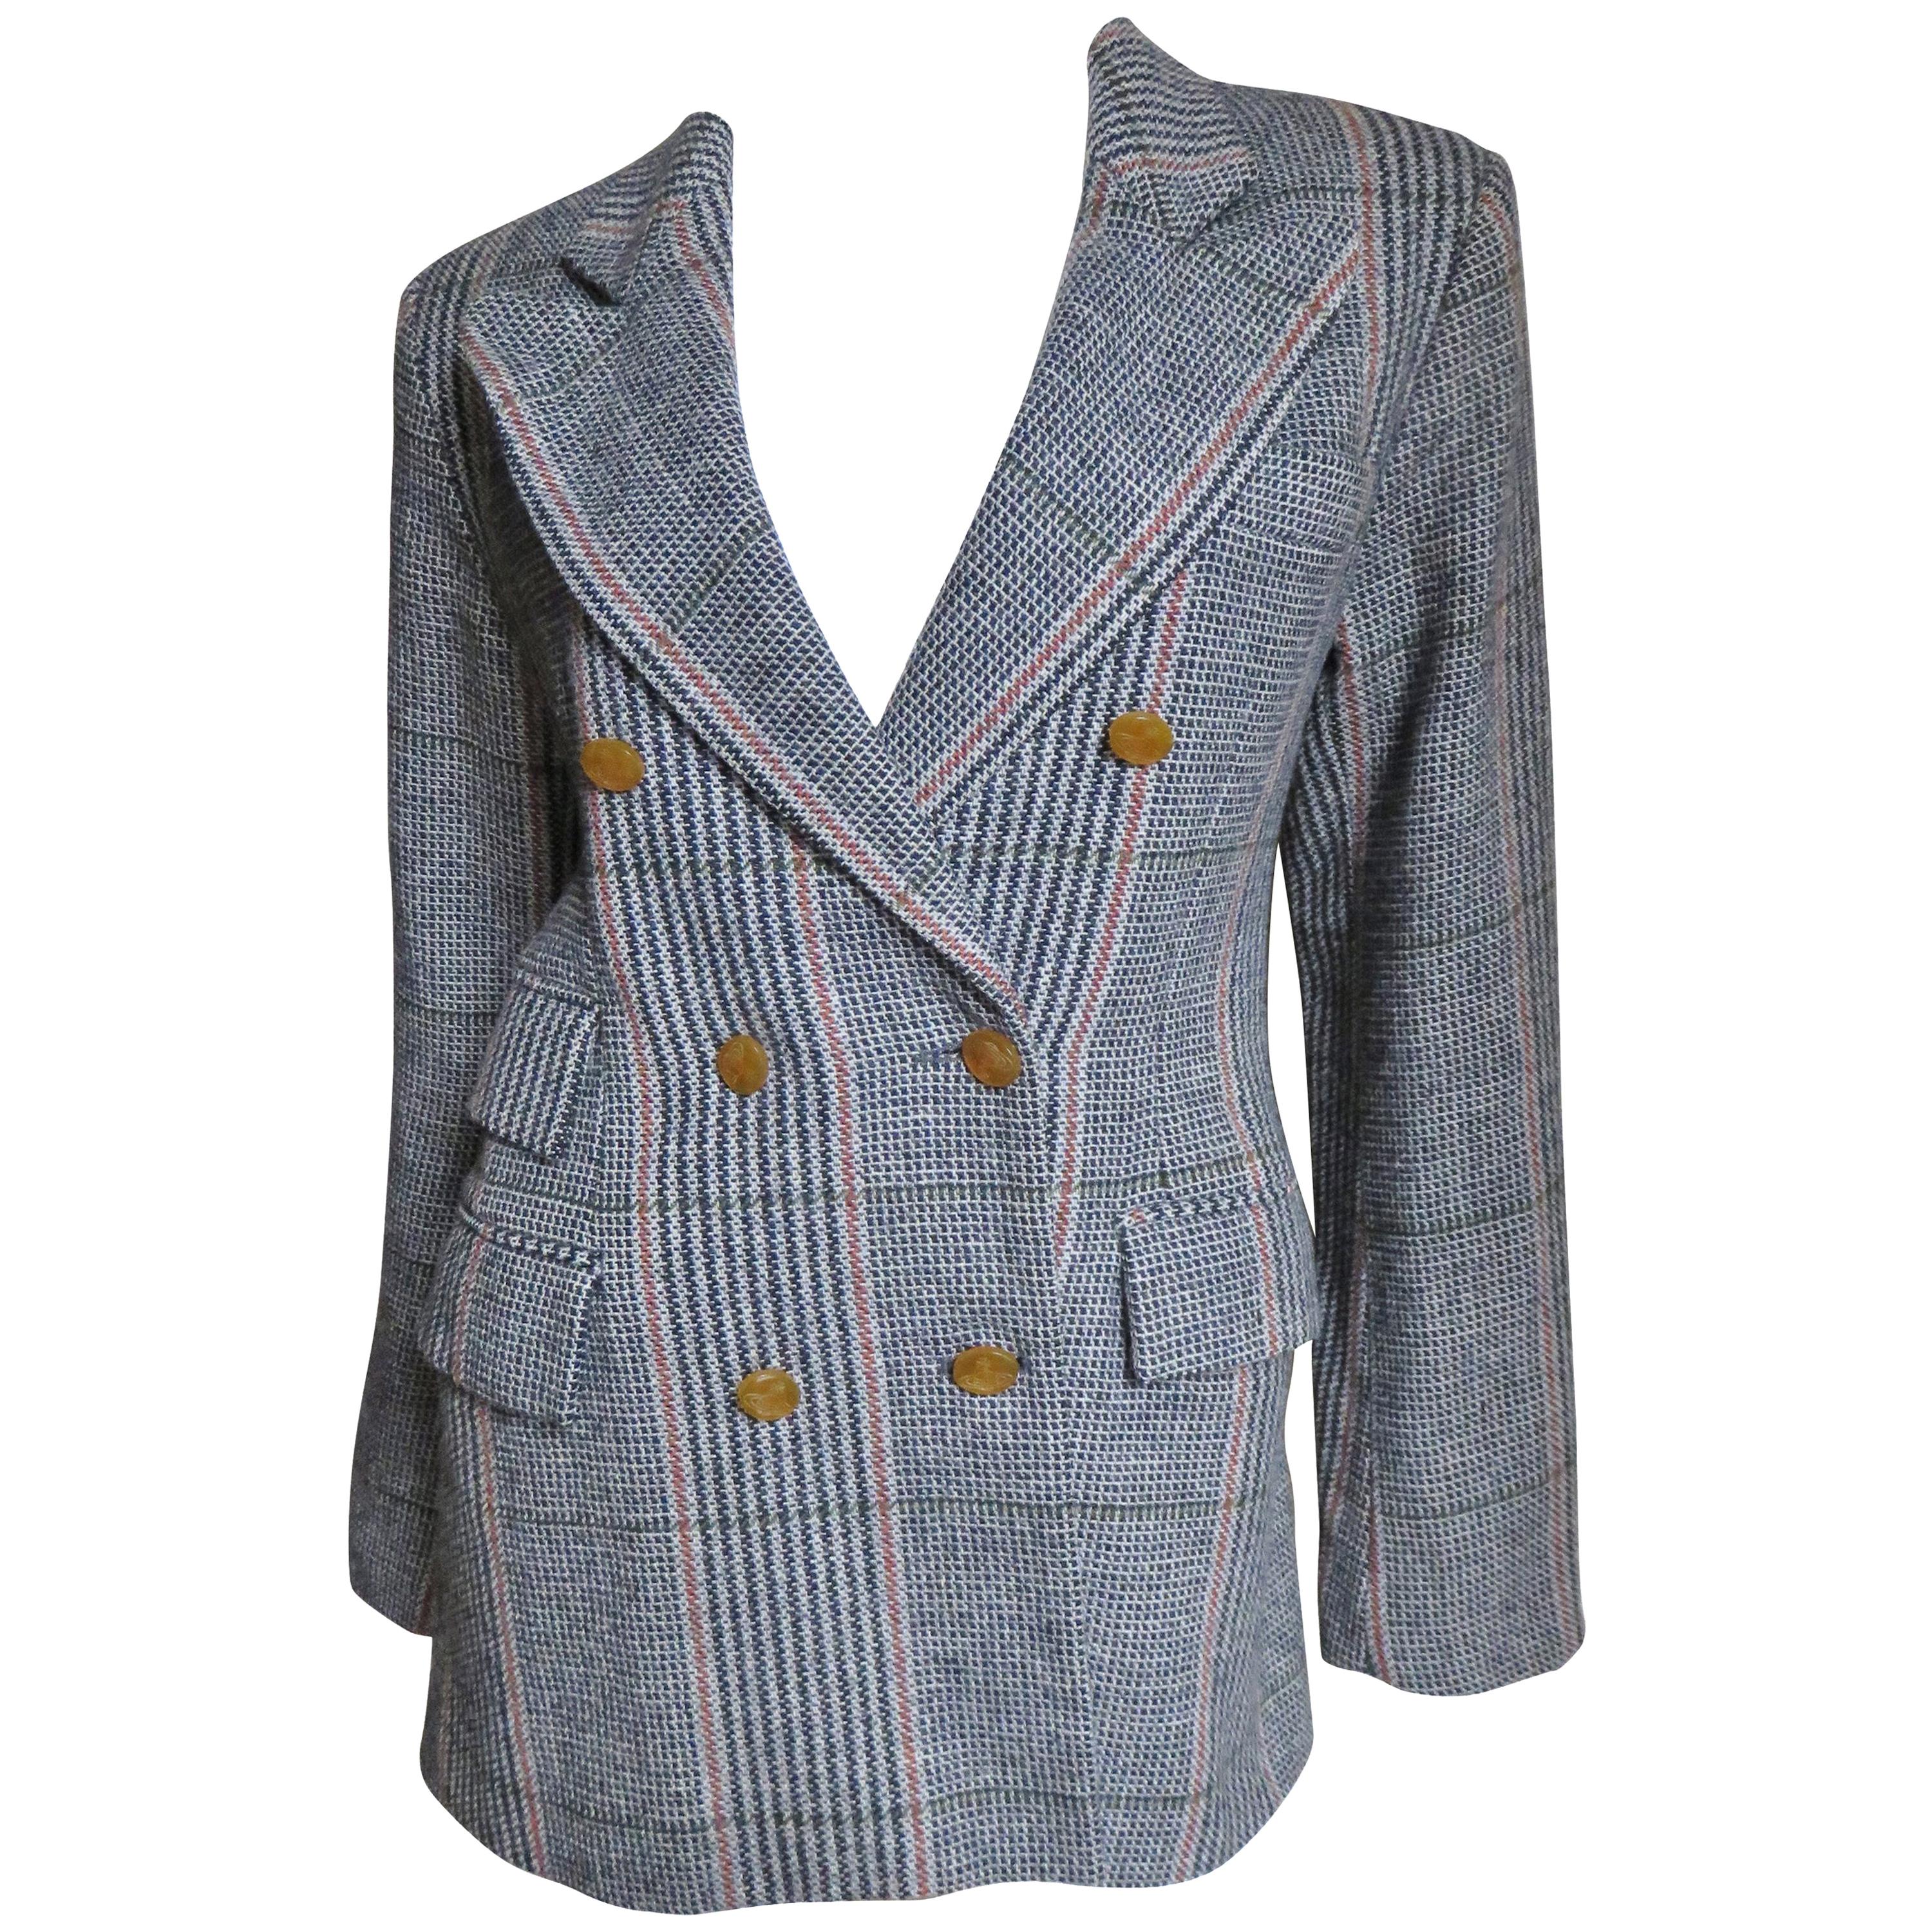  Vivienne Westwood Plaid Jacket 1990s For Sale